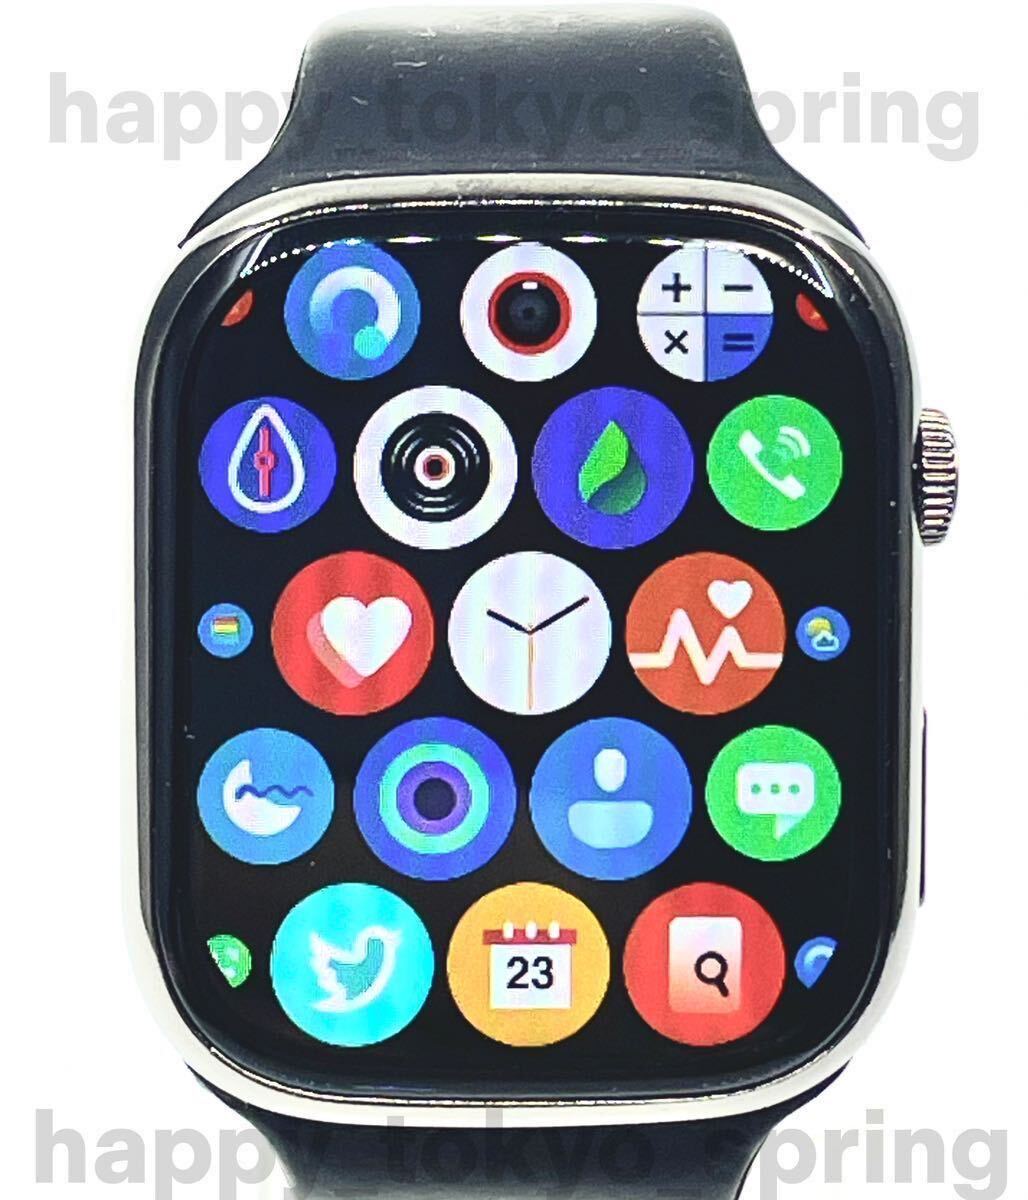  новый товар Apple Watch товар-заменитель 2.3 дюймовый большой экран смарт-часы музыка многофункциональный Watch9 здоровье спорт водонепроницаемый . средний кислород android кровяное давление iphone сон.